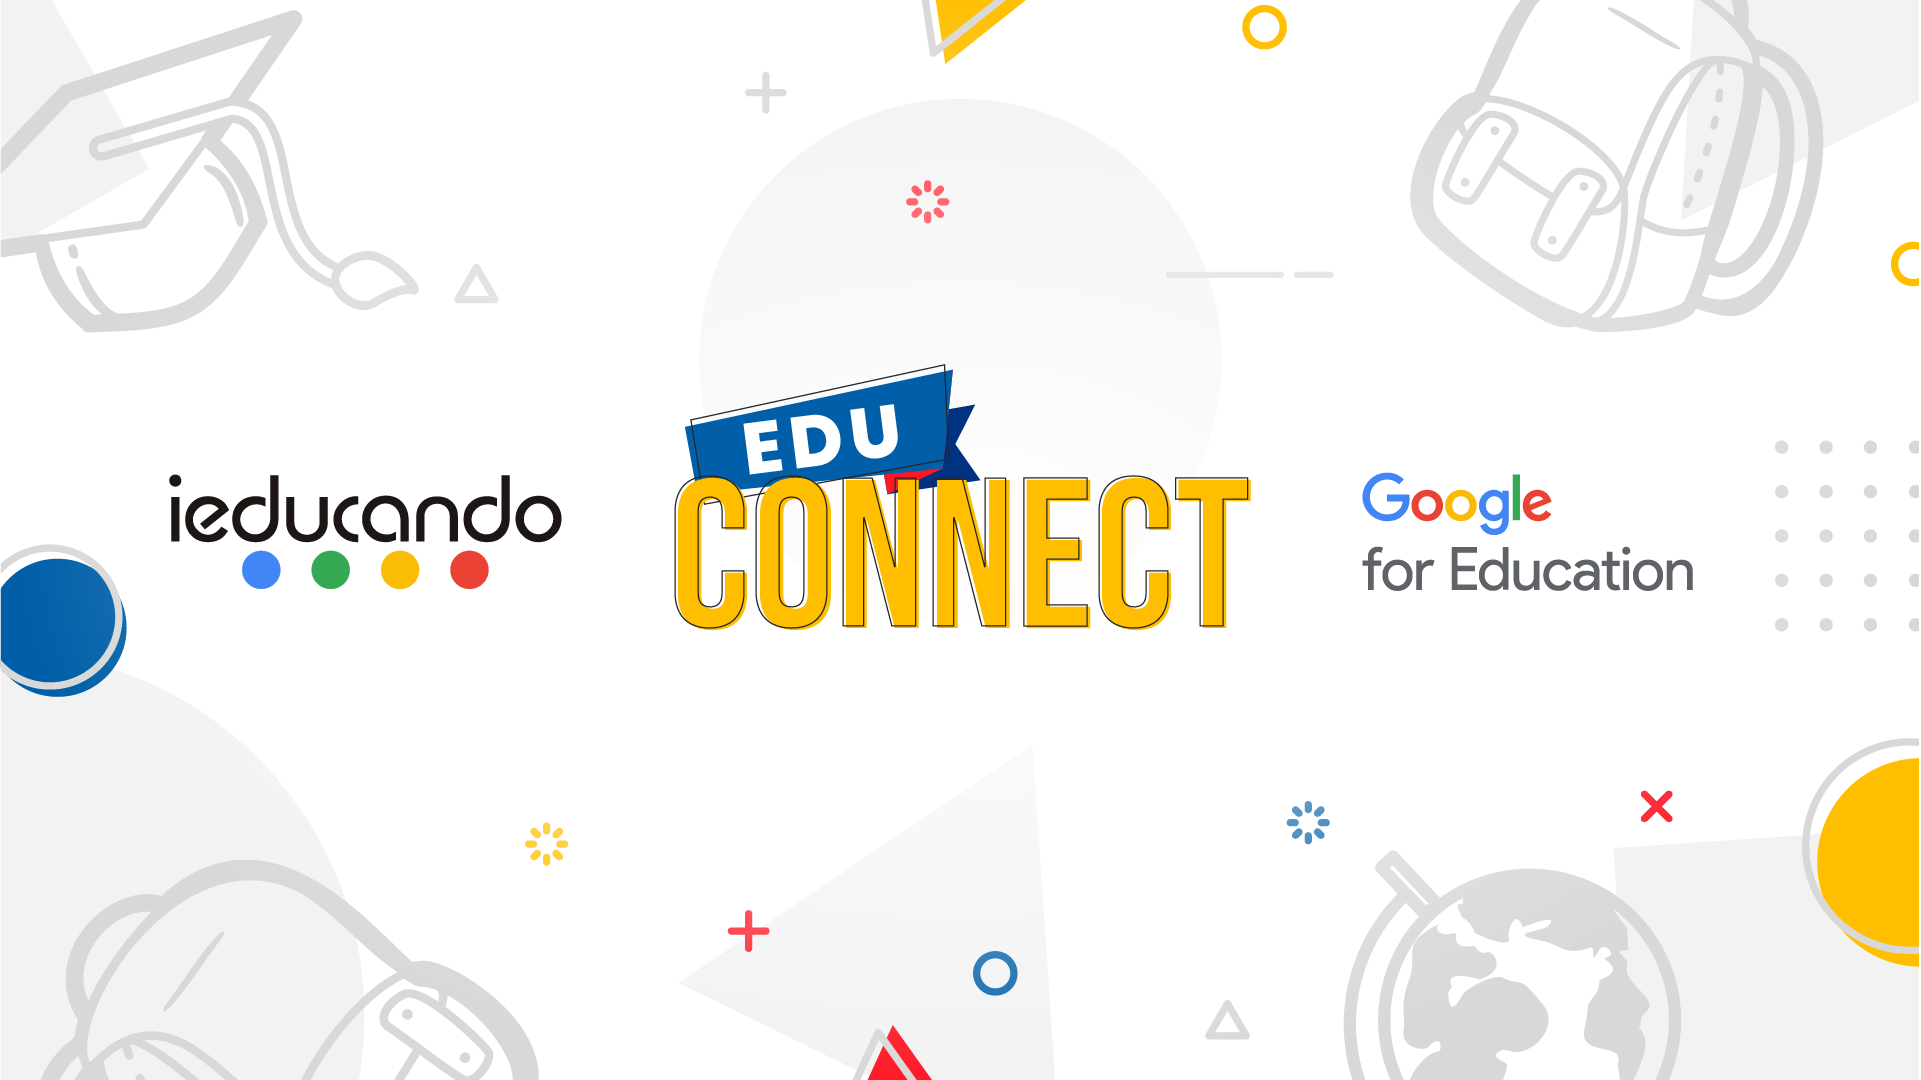 EduConnect ieducando Google for Education Ciudad de Mexico